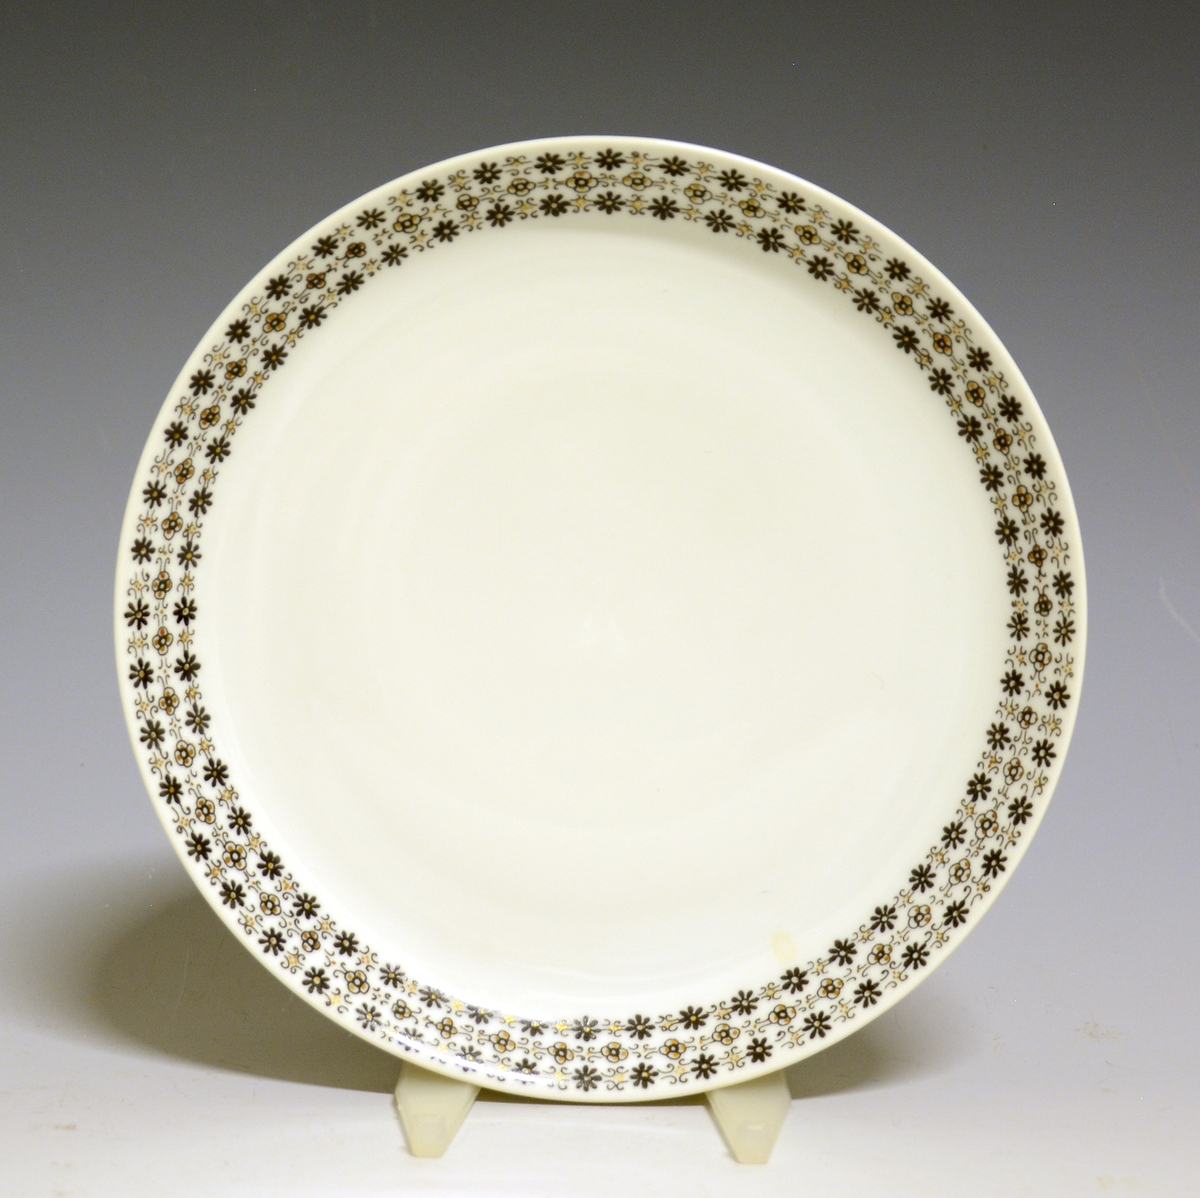 Asjett av porselen med hvit glasur og bord med småblomstret trykkdekor i sort og gull langs kanten.
Modell: Petita (eller variant av)
